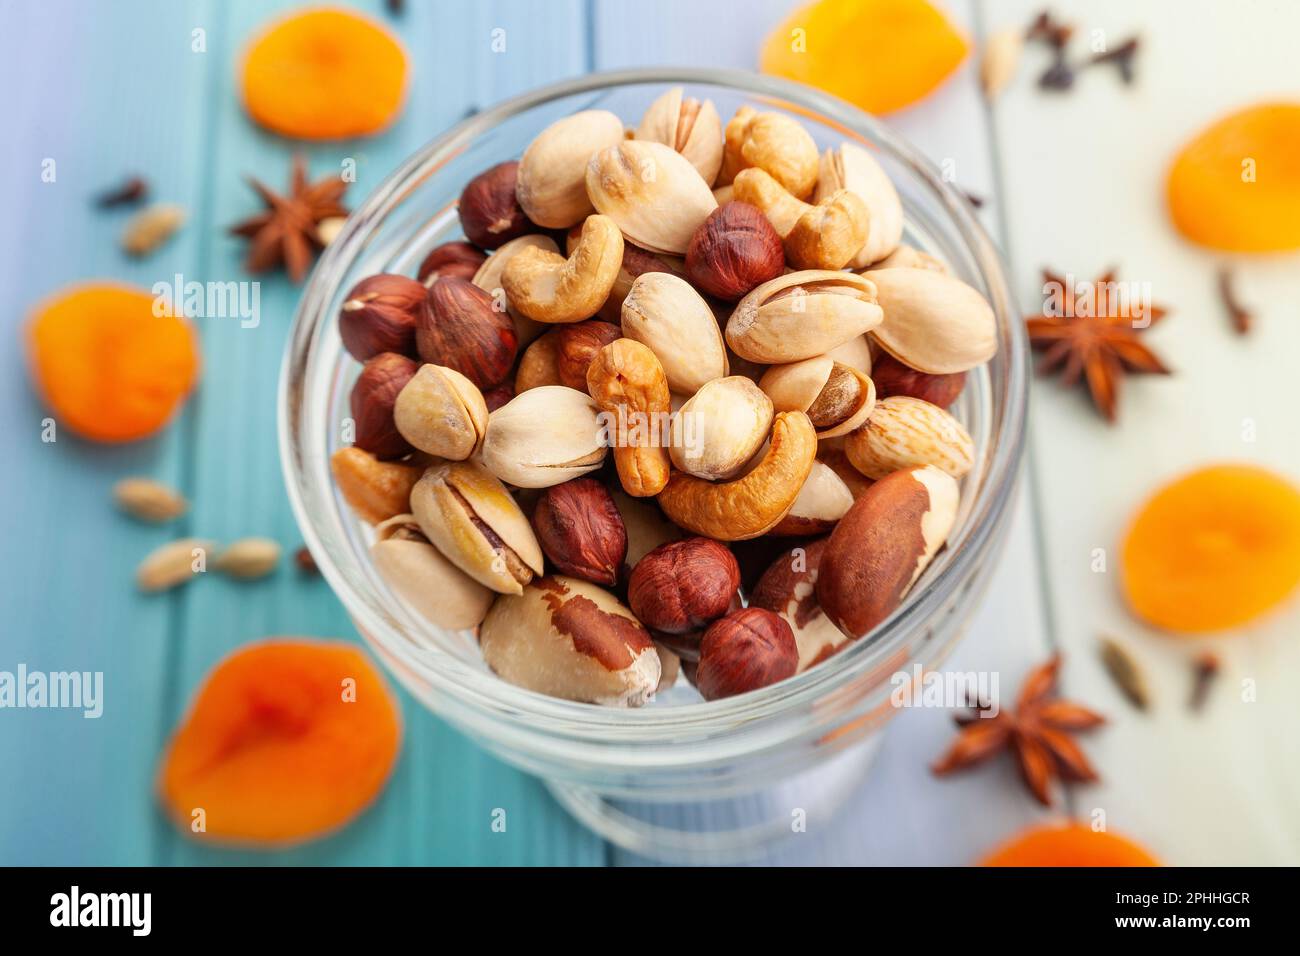 nut mix on wood background Stock Photo